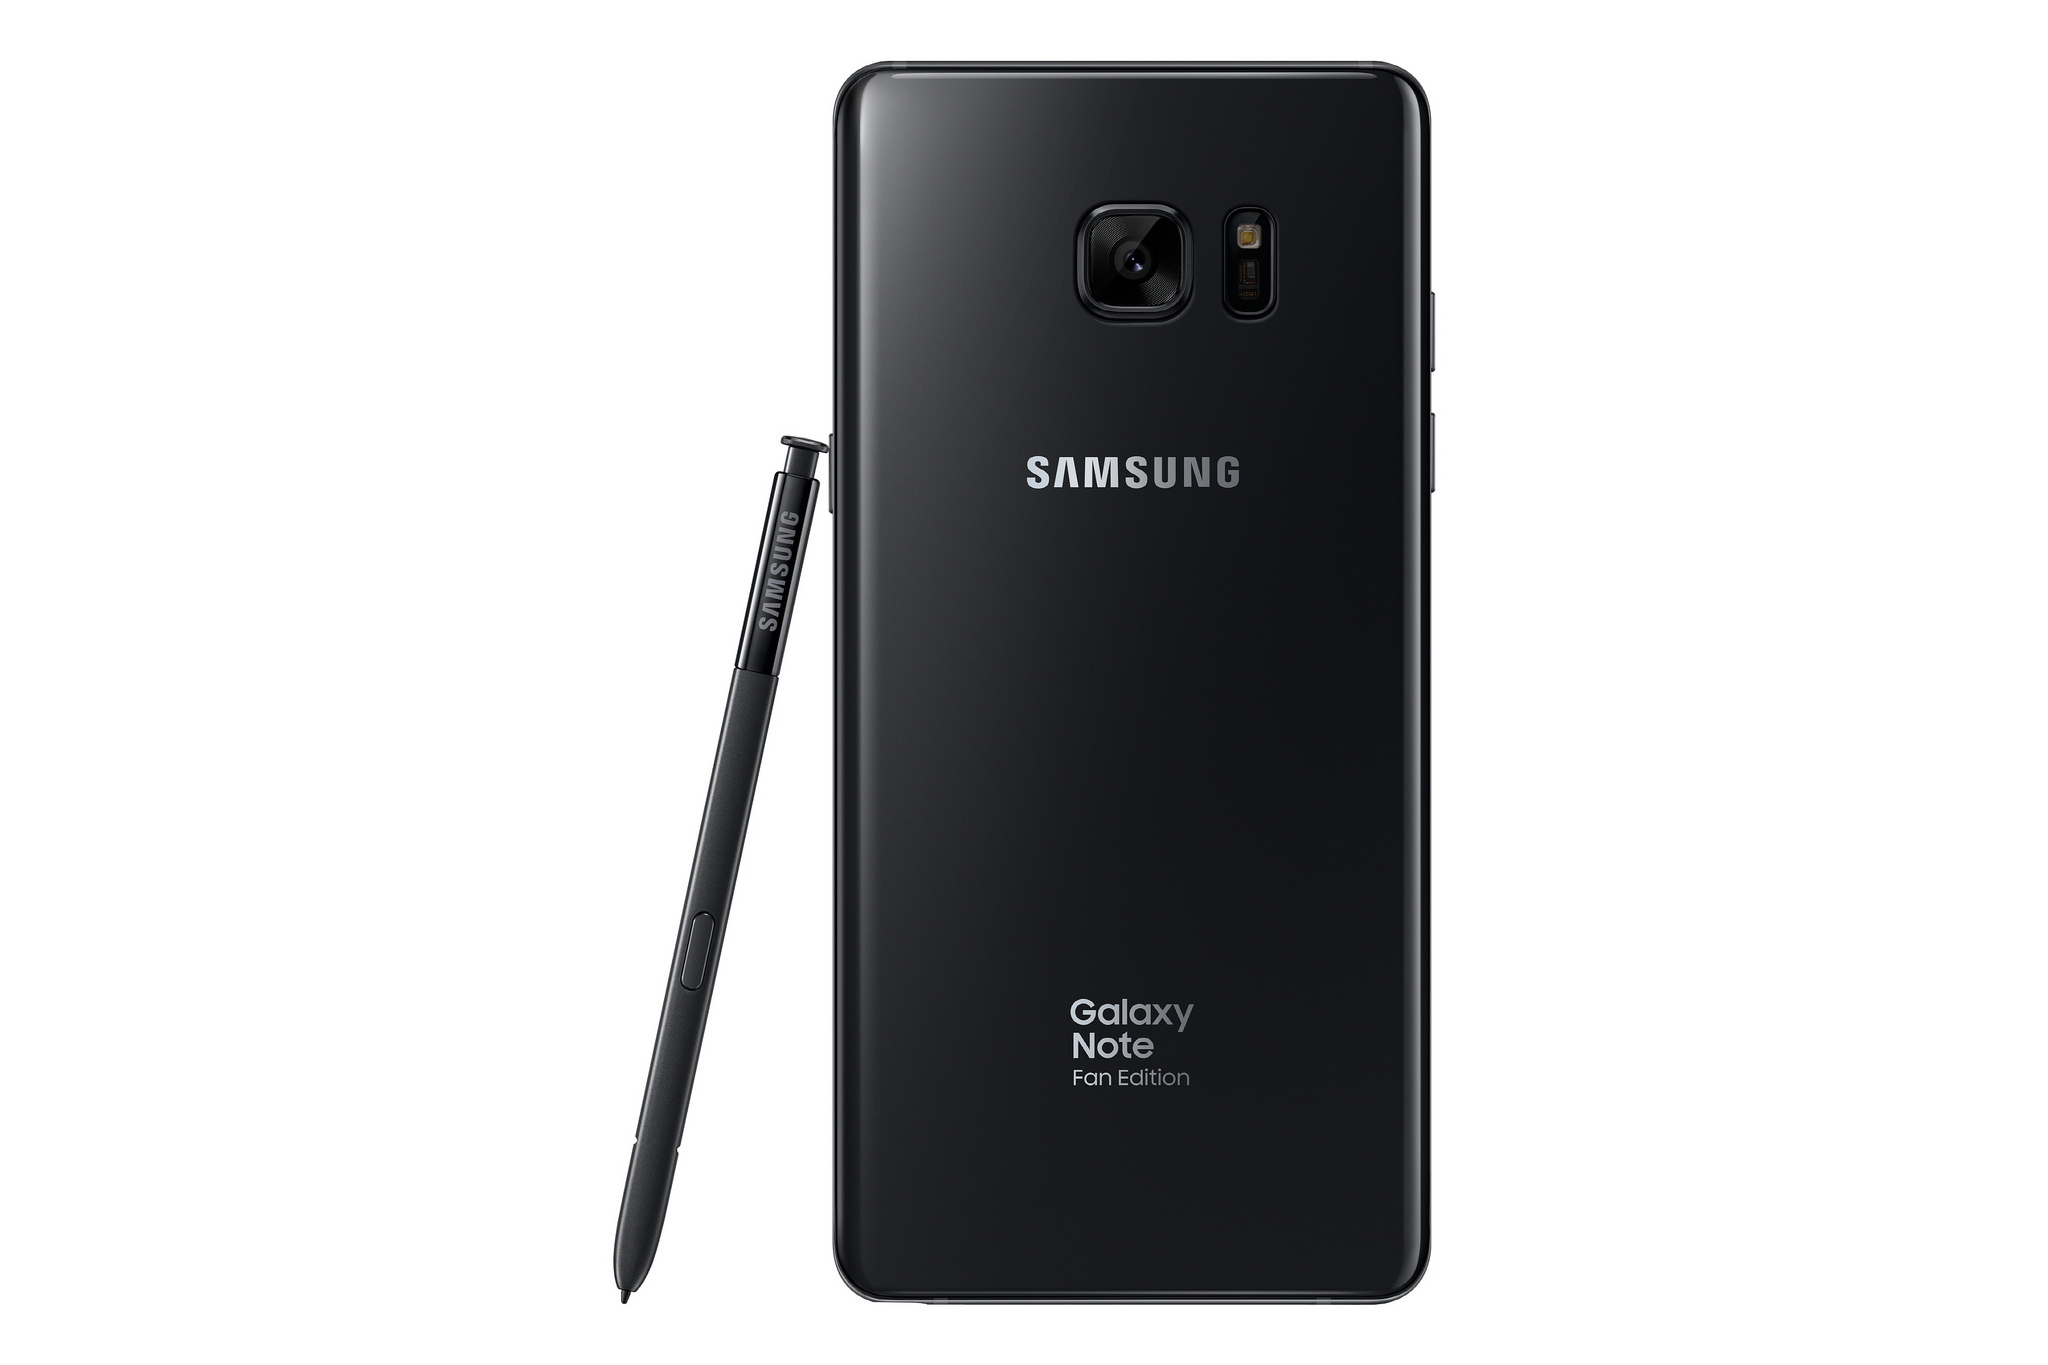 Immagine pubblicata in relazione al seguente contenuto: Samsung ripropone alcuni Galaxy Note7 come Galaxy Note Fan Edition | Nome immagine: news26623_Samsung-Galaxy-Note-Fan-Edition_3.jpg